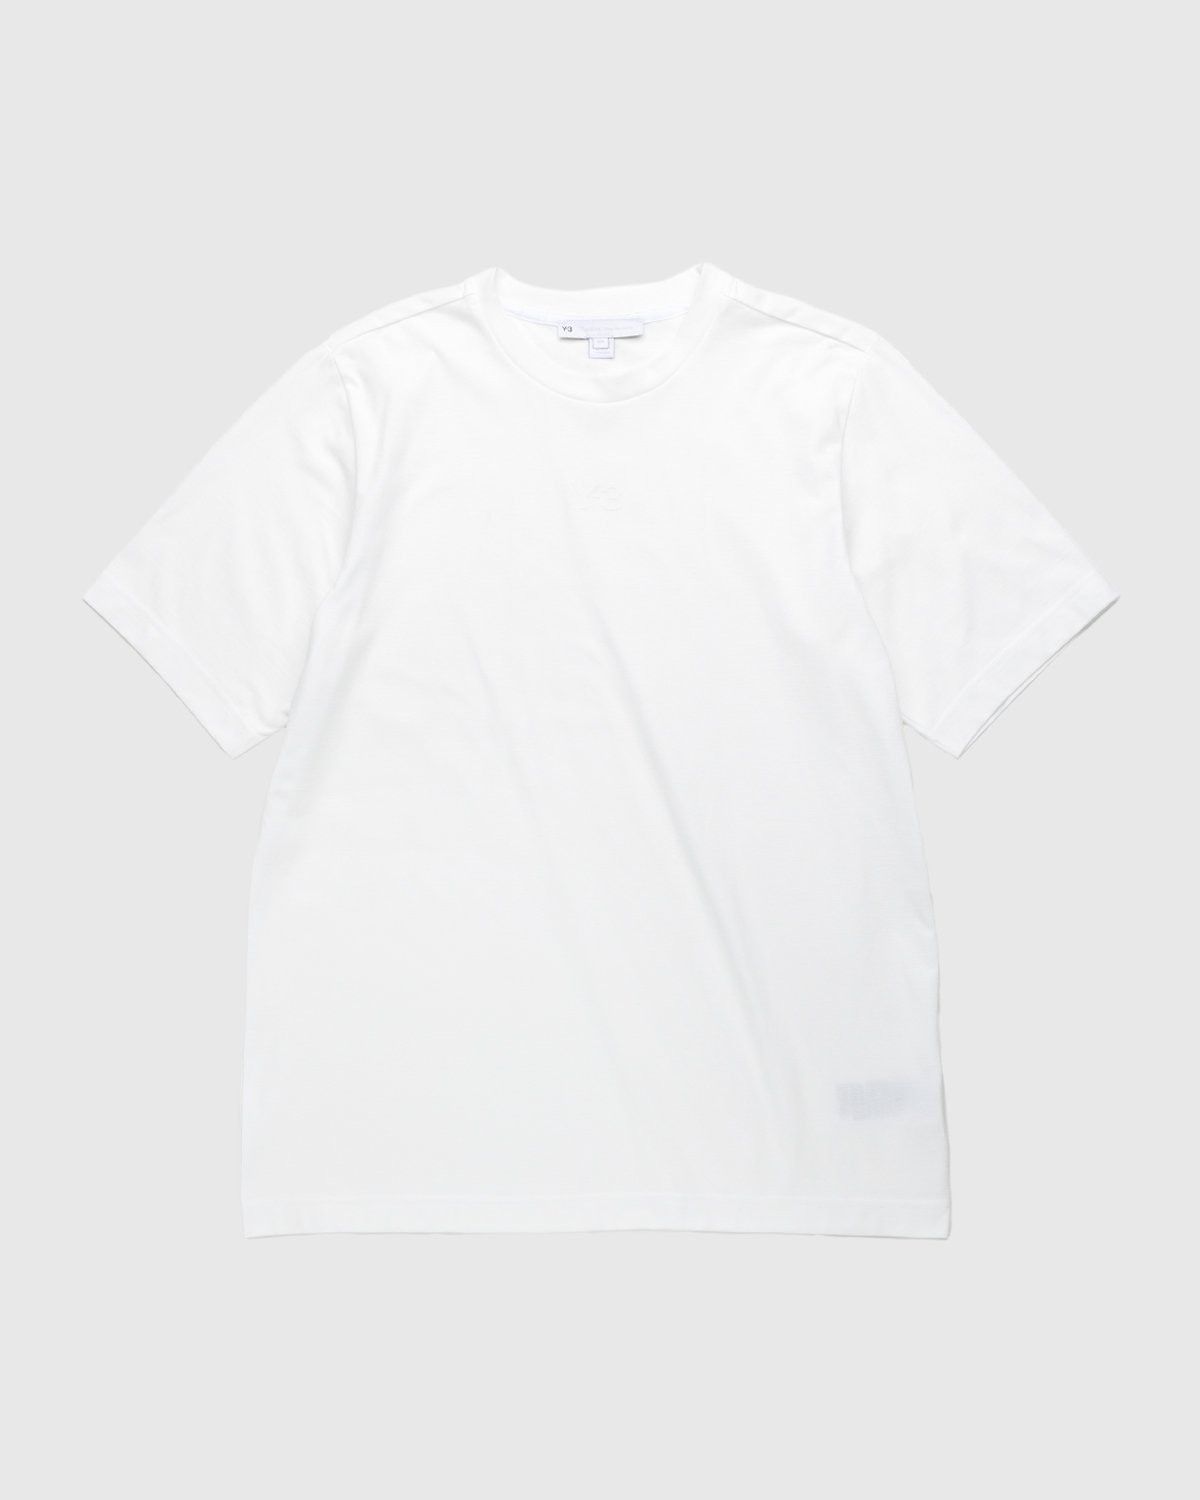 Y-3 - Logo T-Shirt White - Clothing - White - Image 1